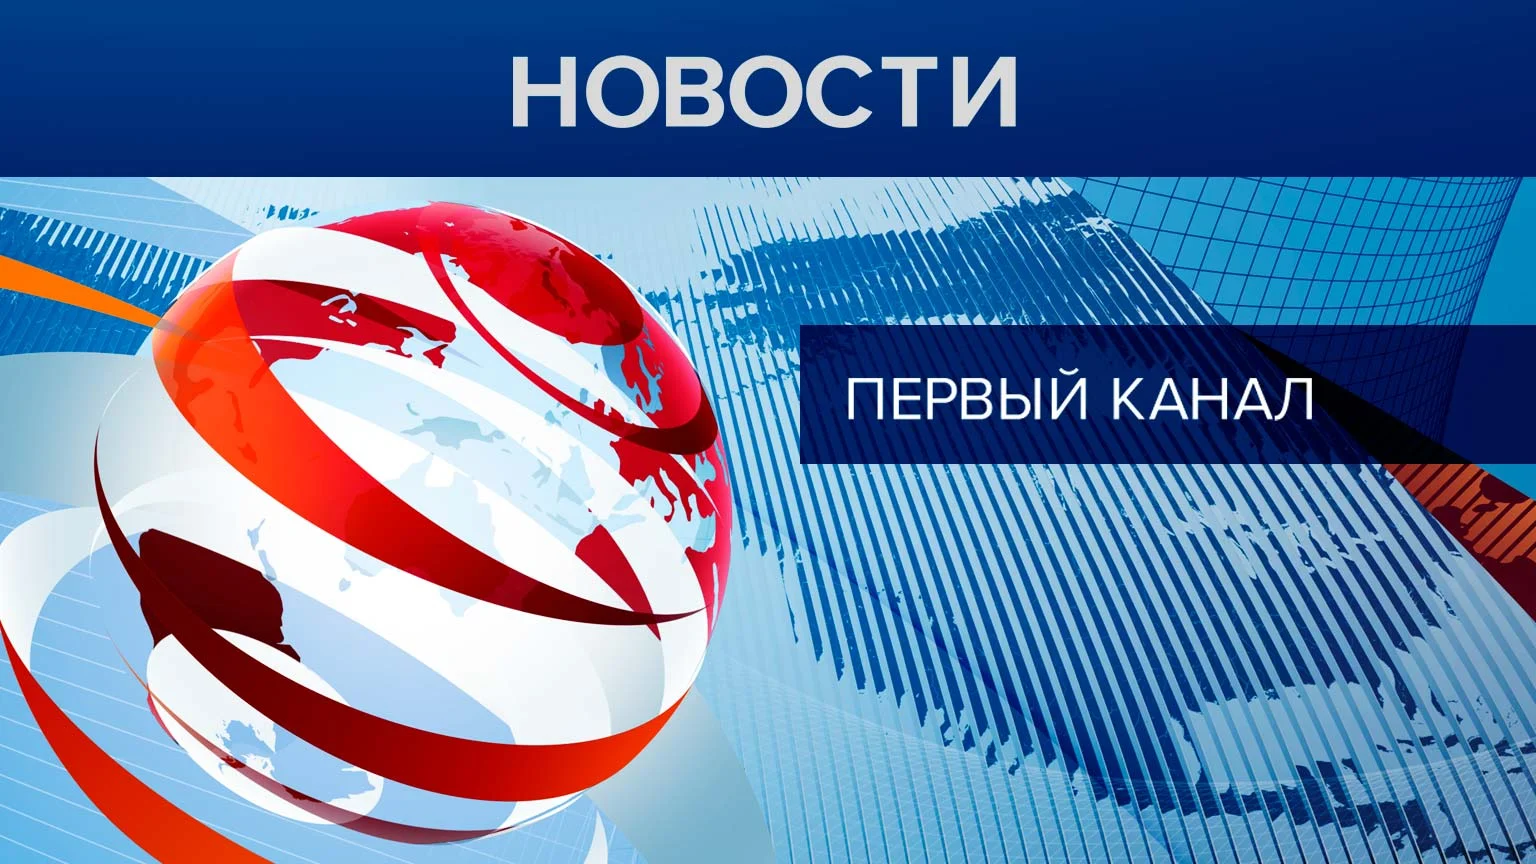 КПРФ отправила на Донбасс сотый гуманитарный конвой. Репортаж 1 канала